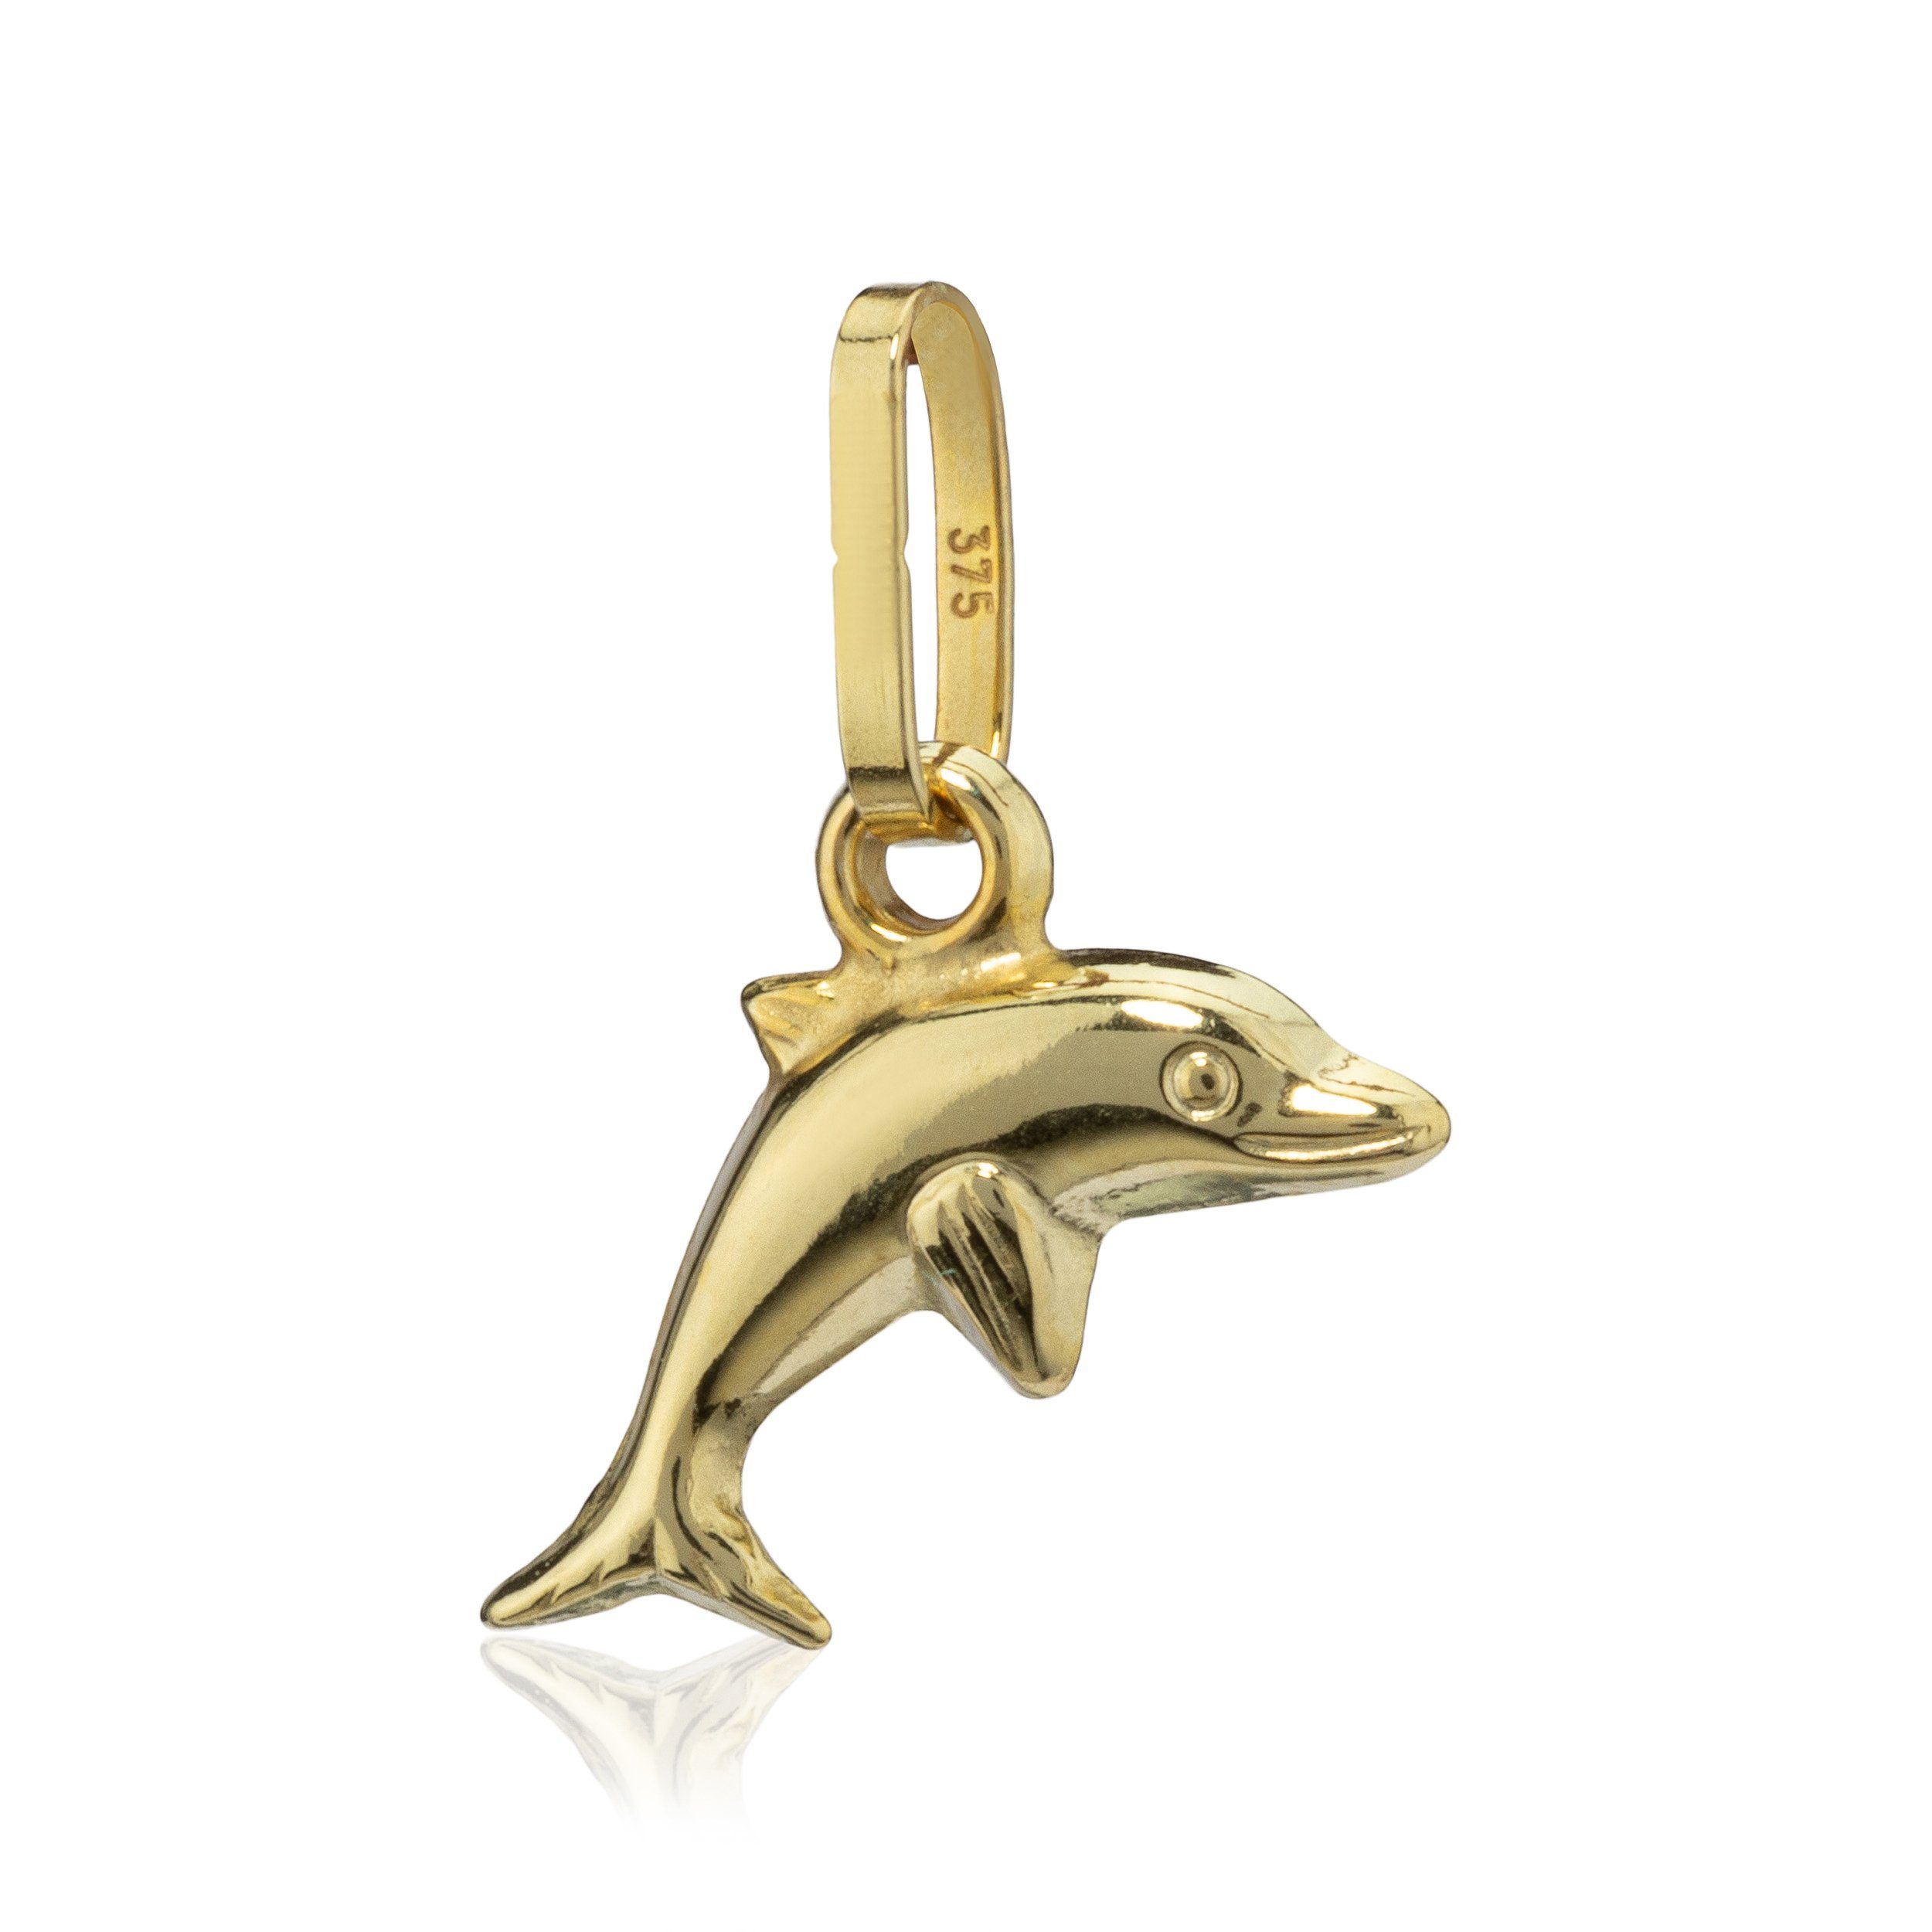 NKlaus Kettenanhänger kleine Delfin Baby 9 Karat Gelb Gold 375 Kettenanh